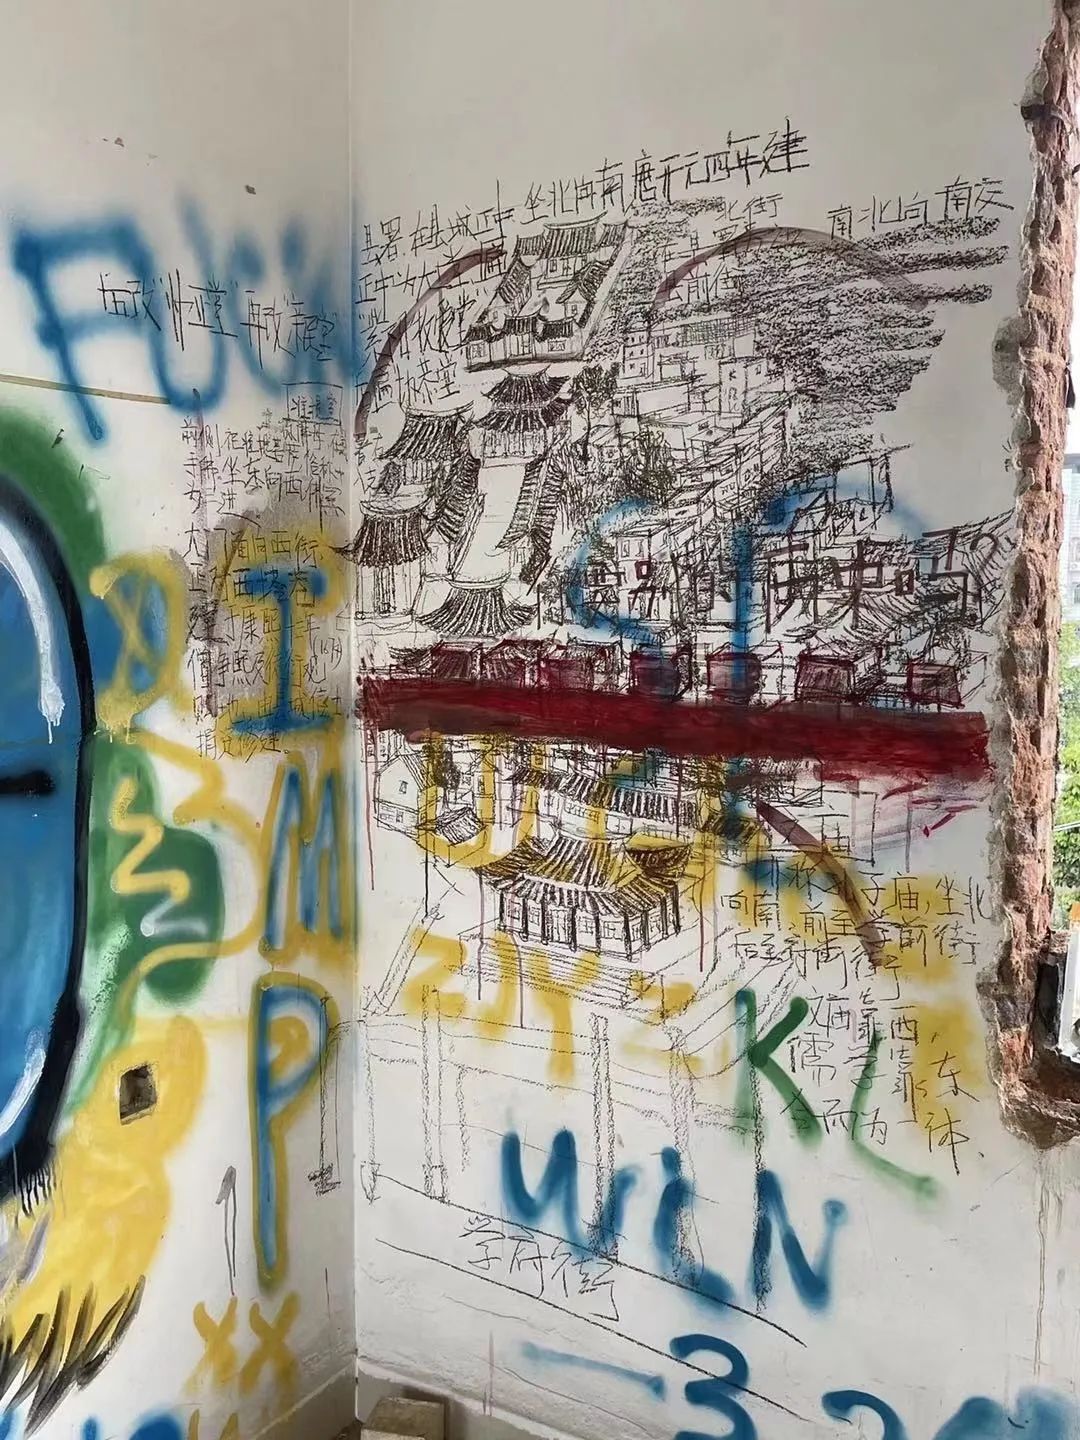 废墟里面的涂鸦，内容取自某本地方志。图片：蚵仔面随滚